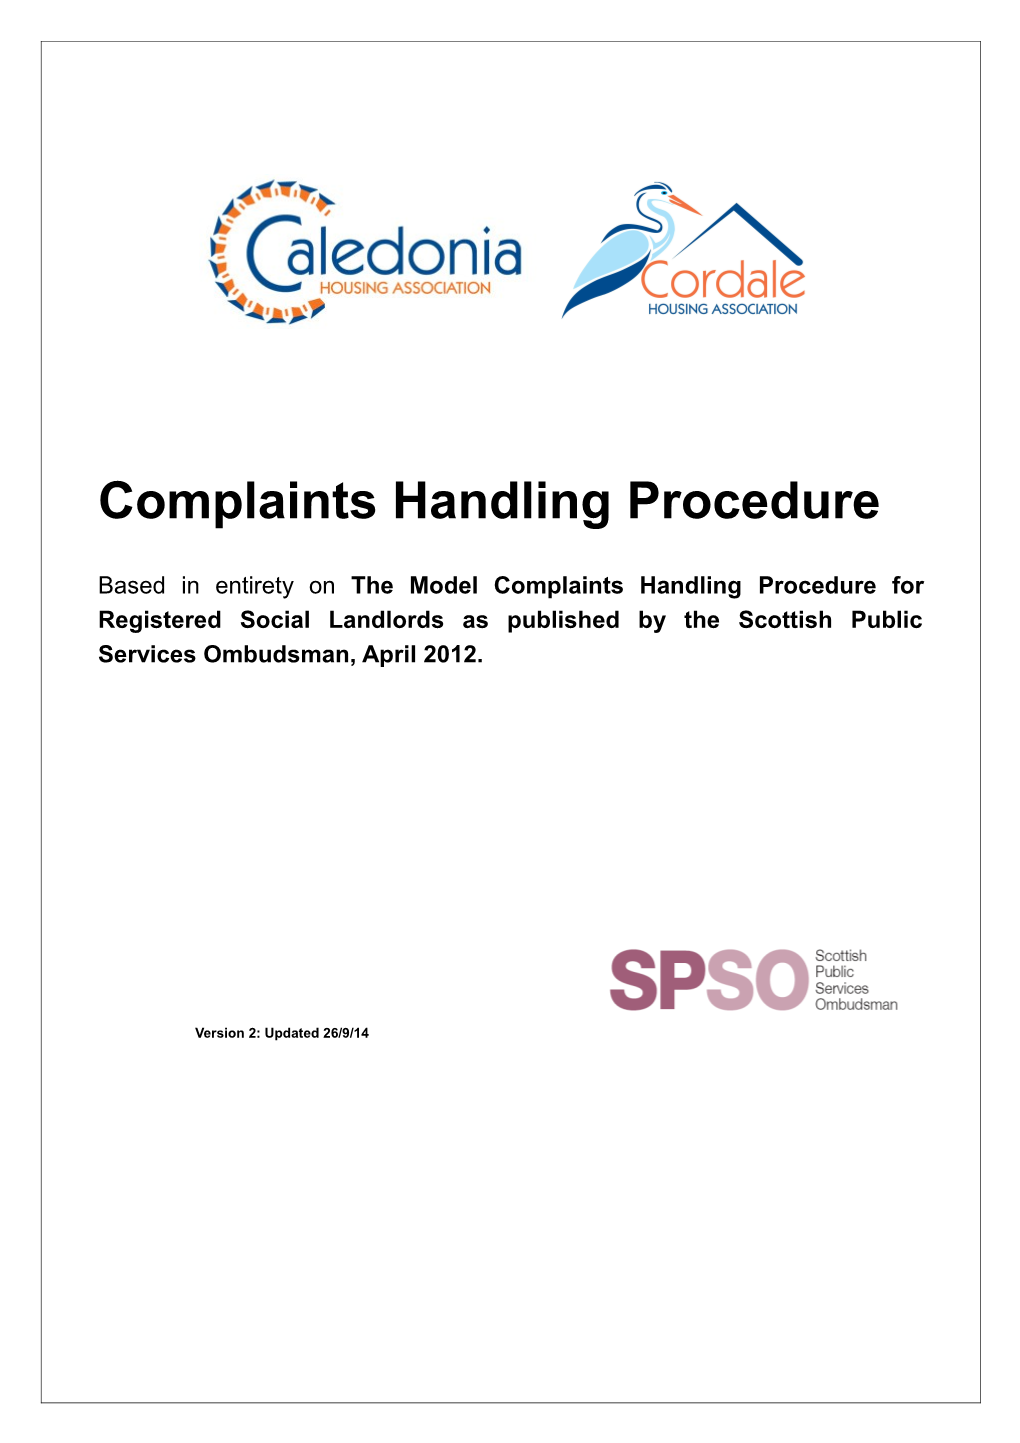 Full Complaints Handling Procedure